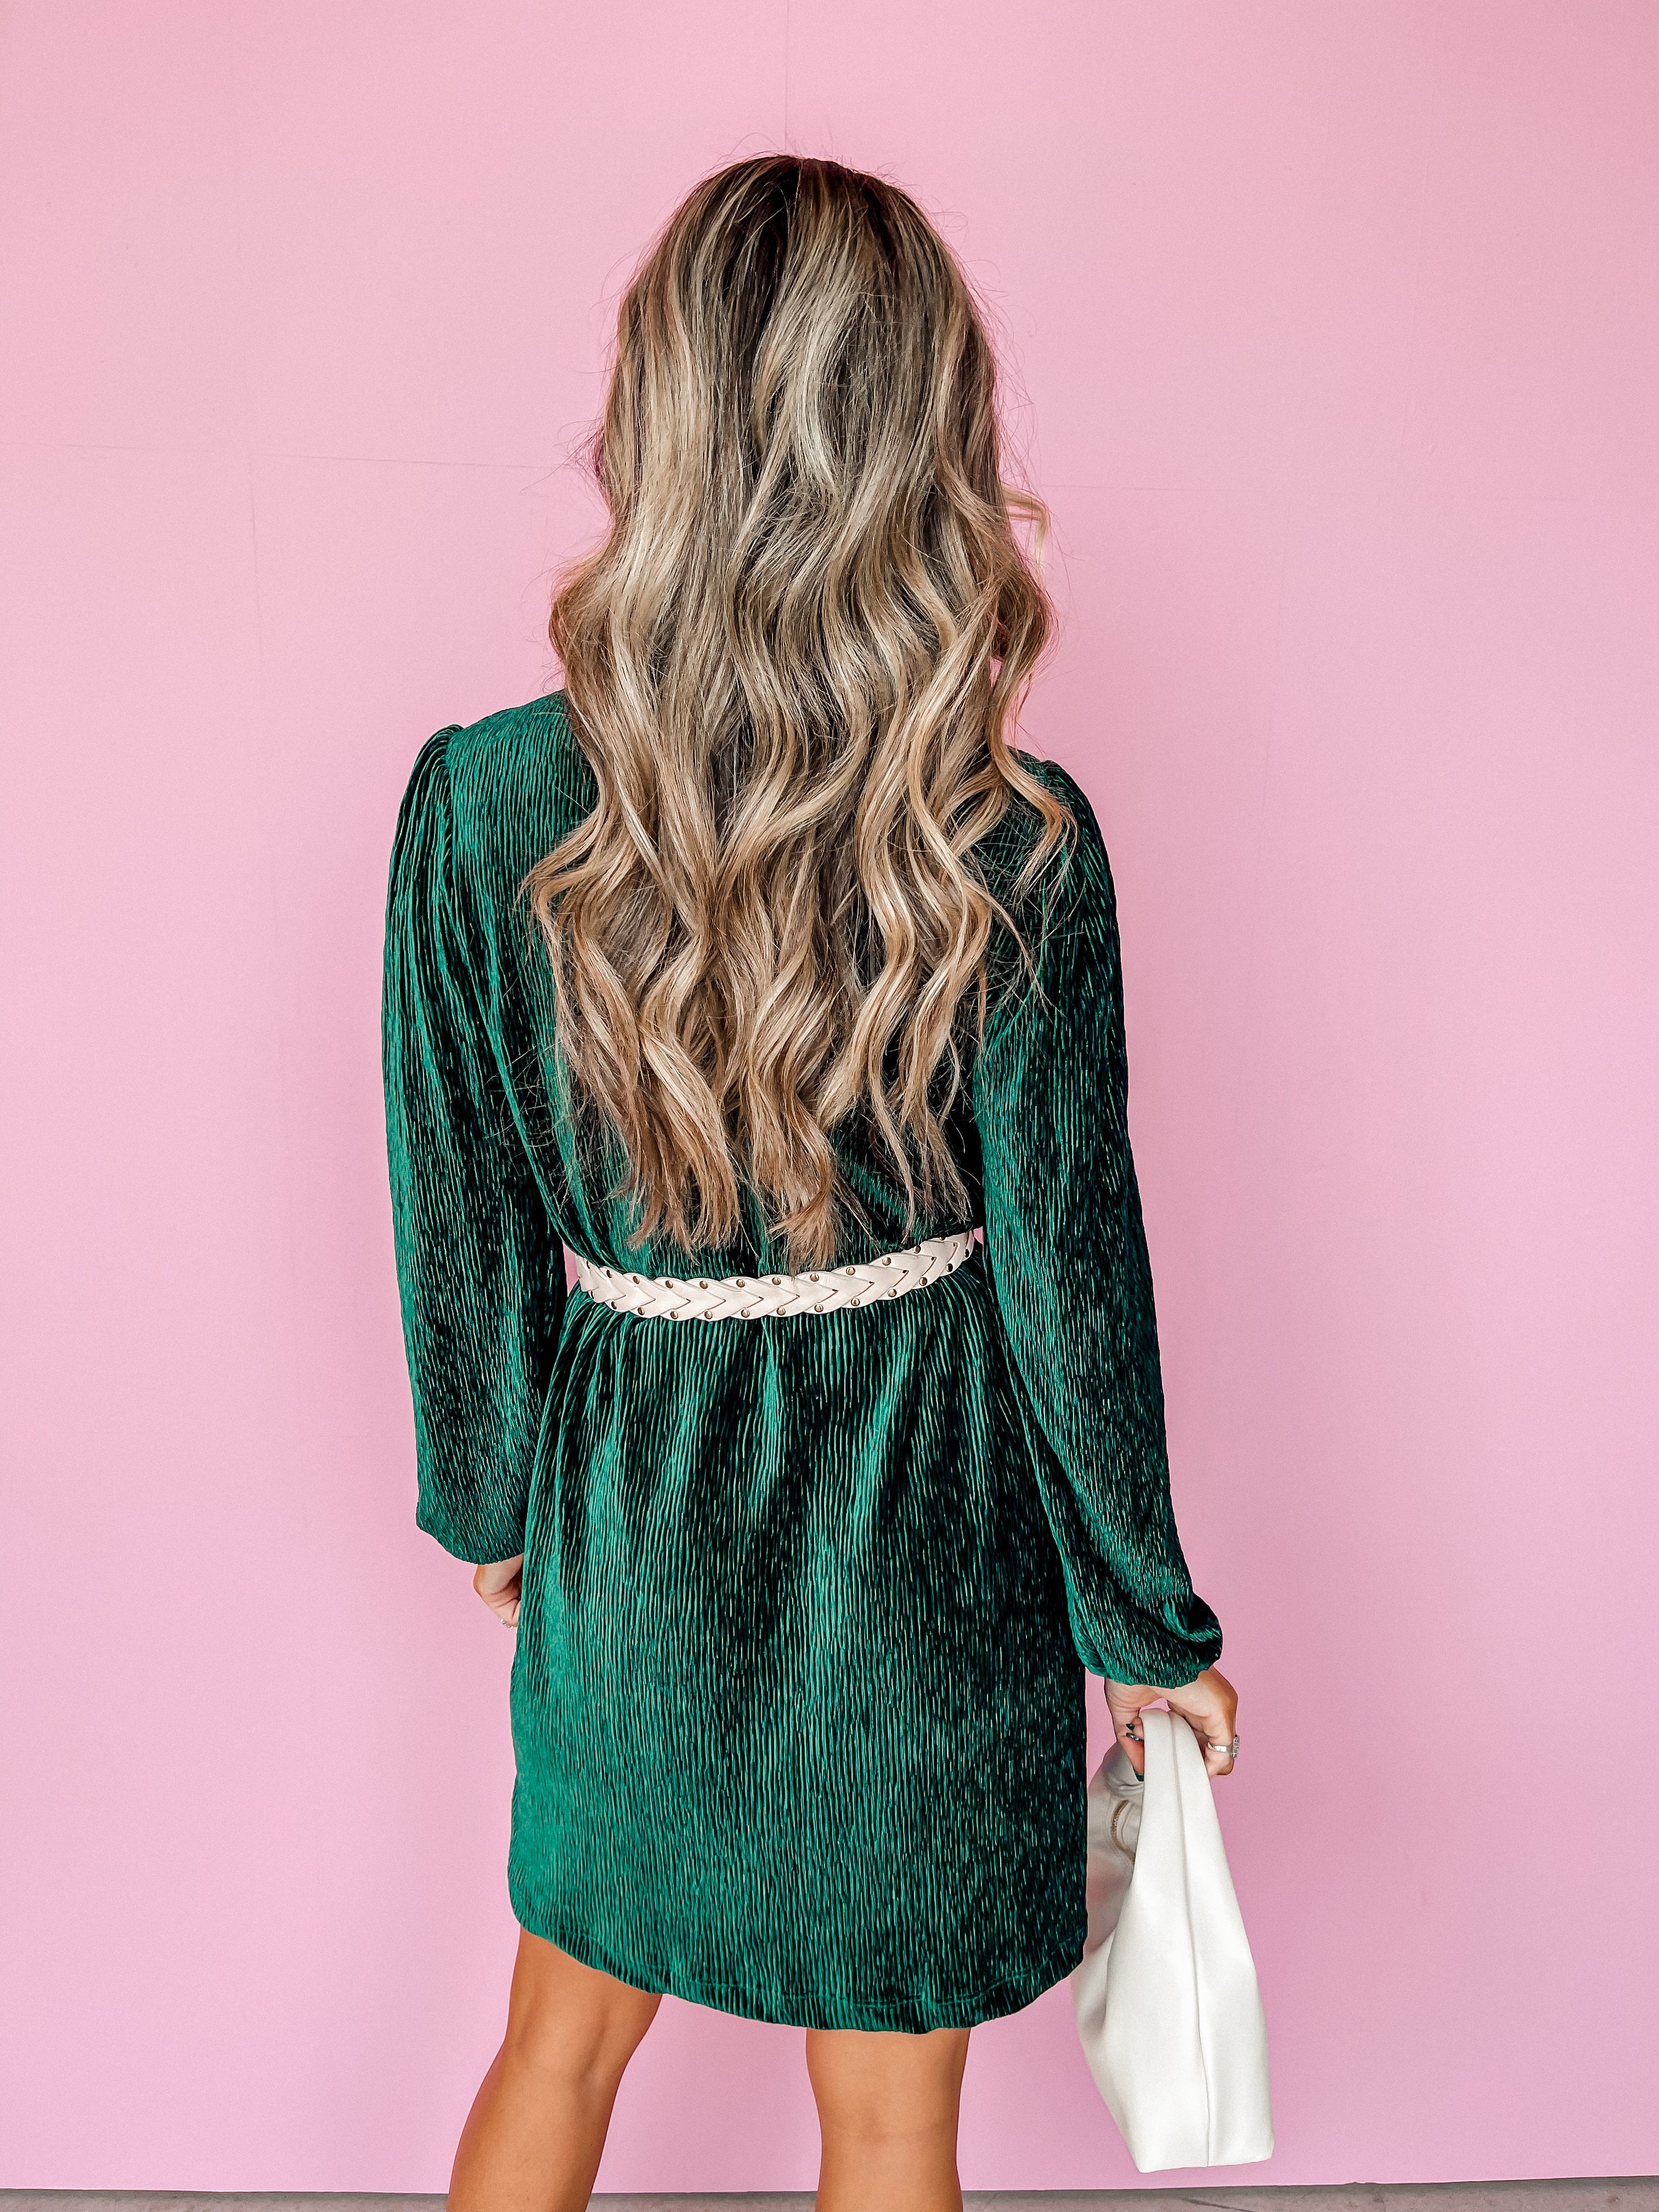 In Due Time Textured Velvet Dress-Hunter Green